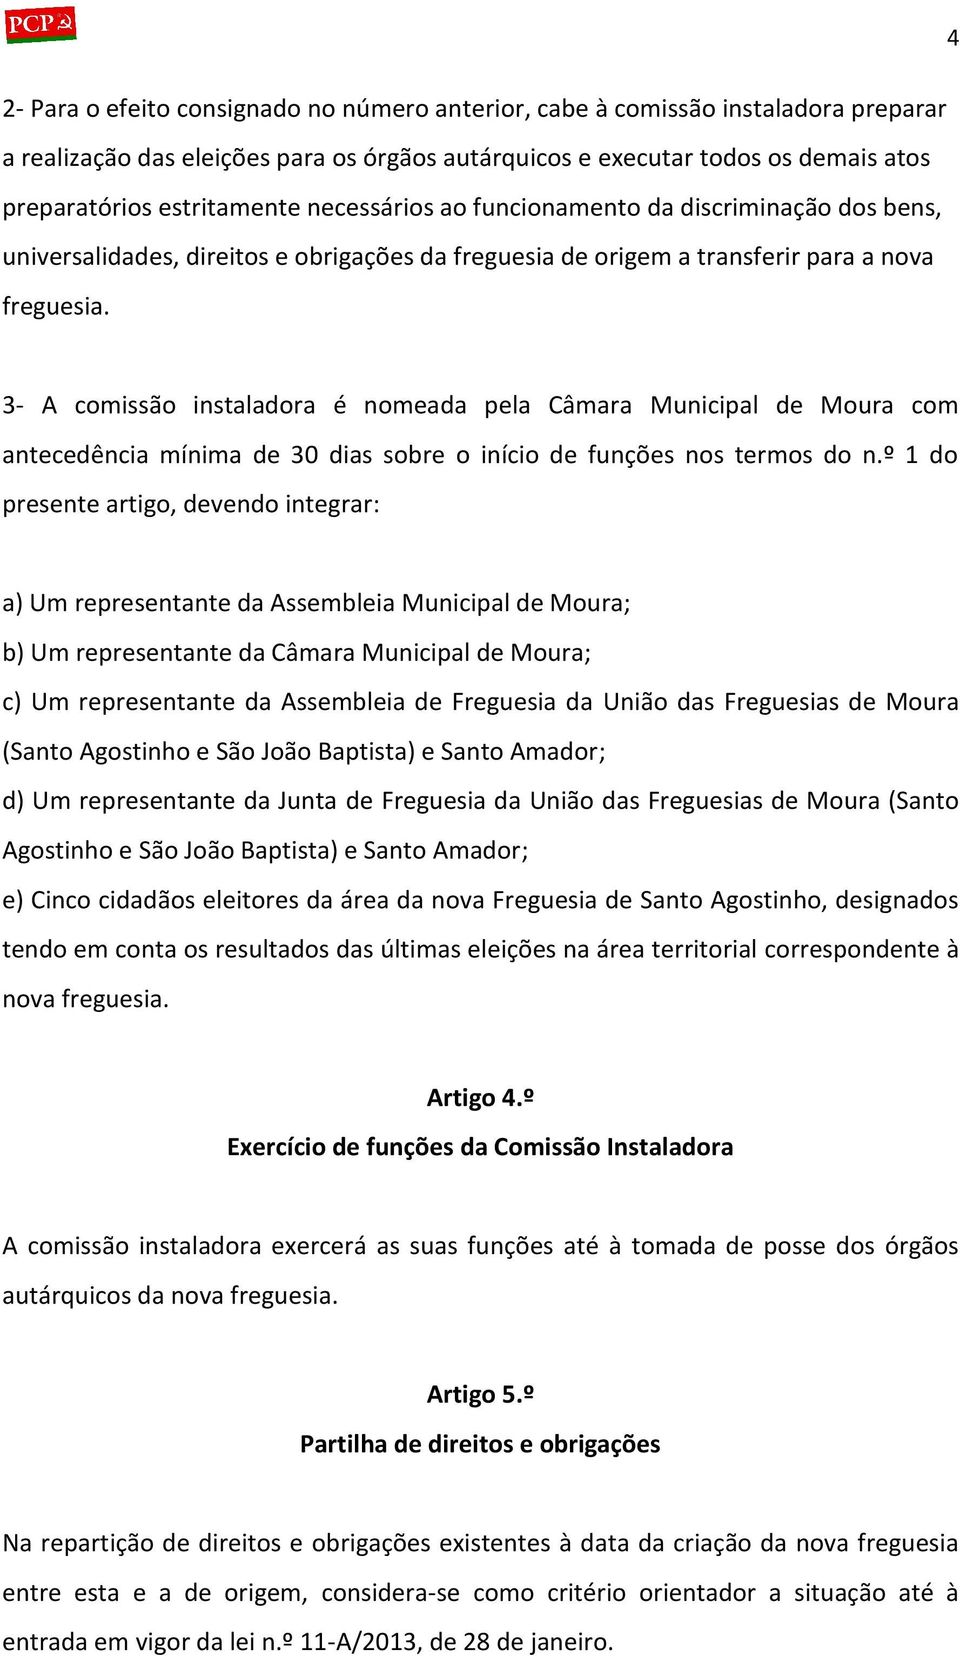 3- A comissão instaladora é nomeada pela Câmara Municipal de Moura com antecedência mínima de 30 dias sobre o início de funções nos termos do n.